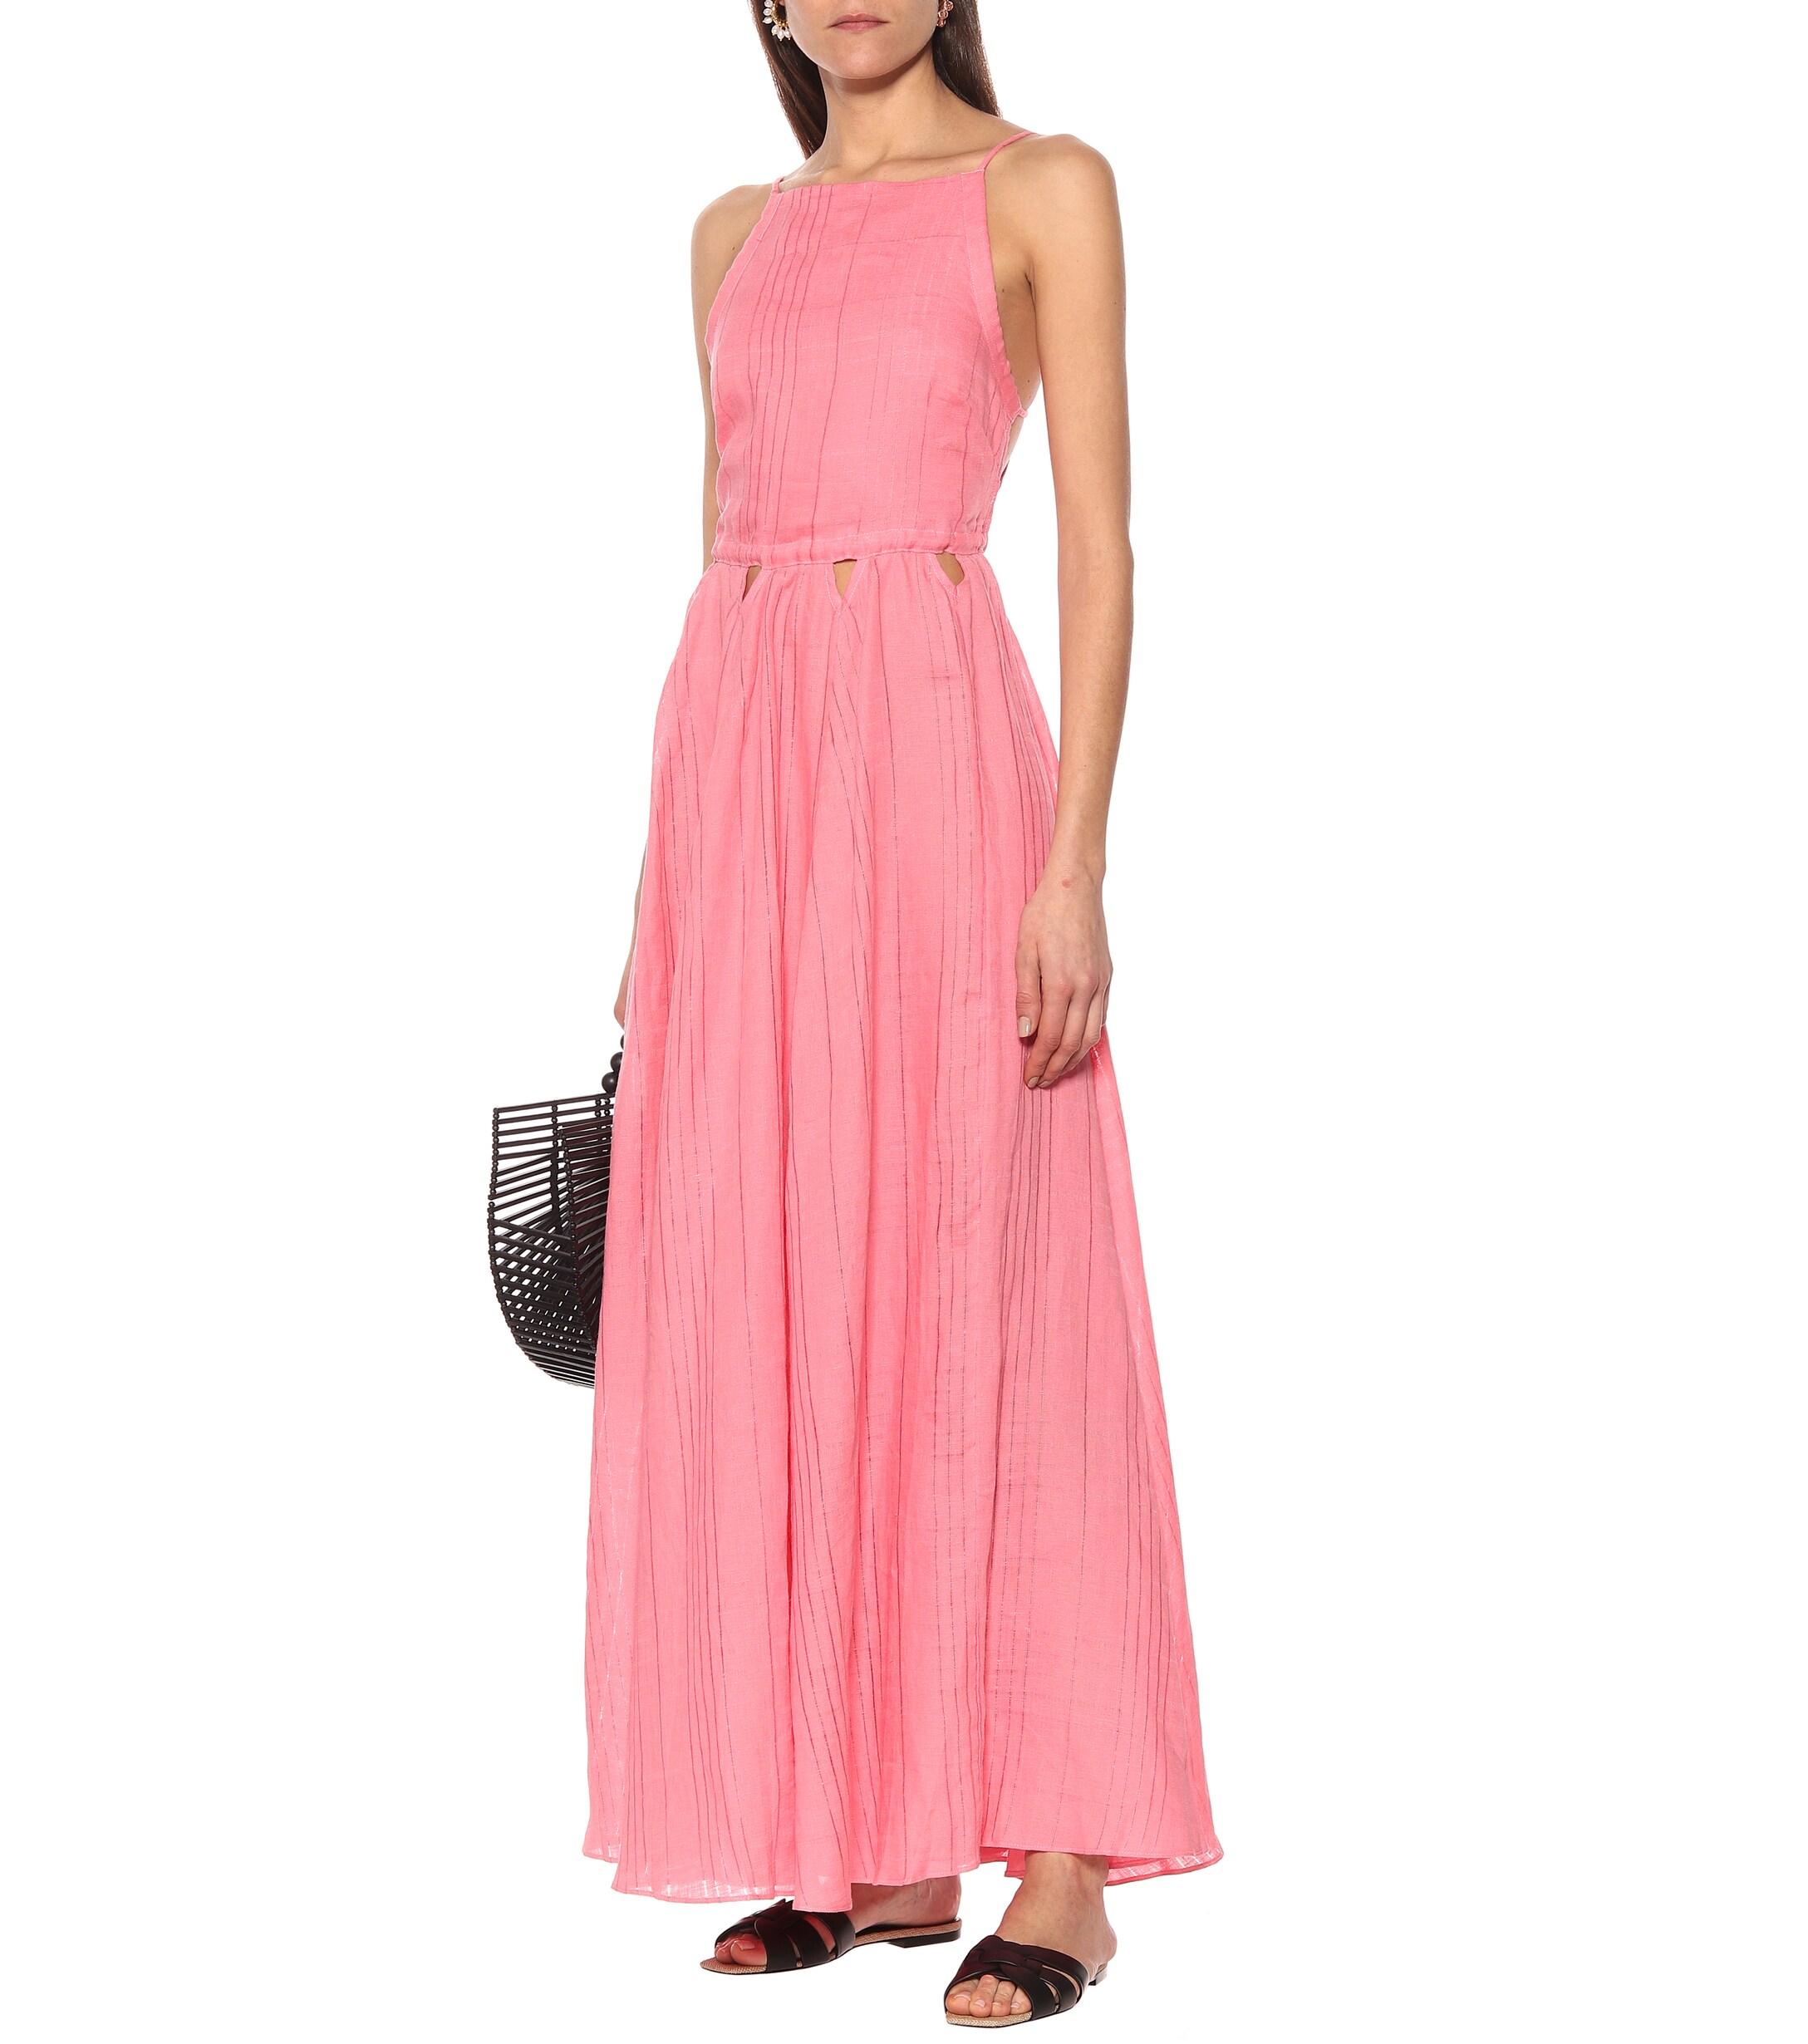 Cult Gaia Bella Linen Maxi Dress in Pink - Lyst